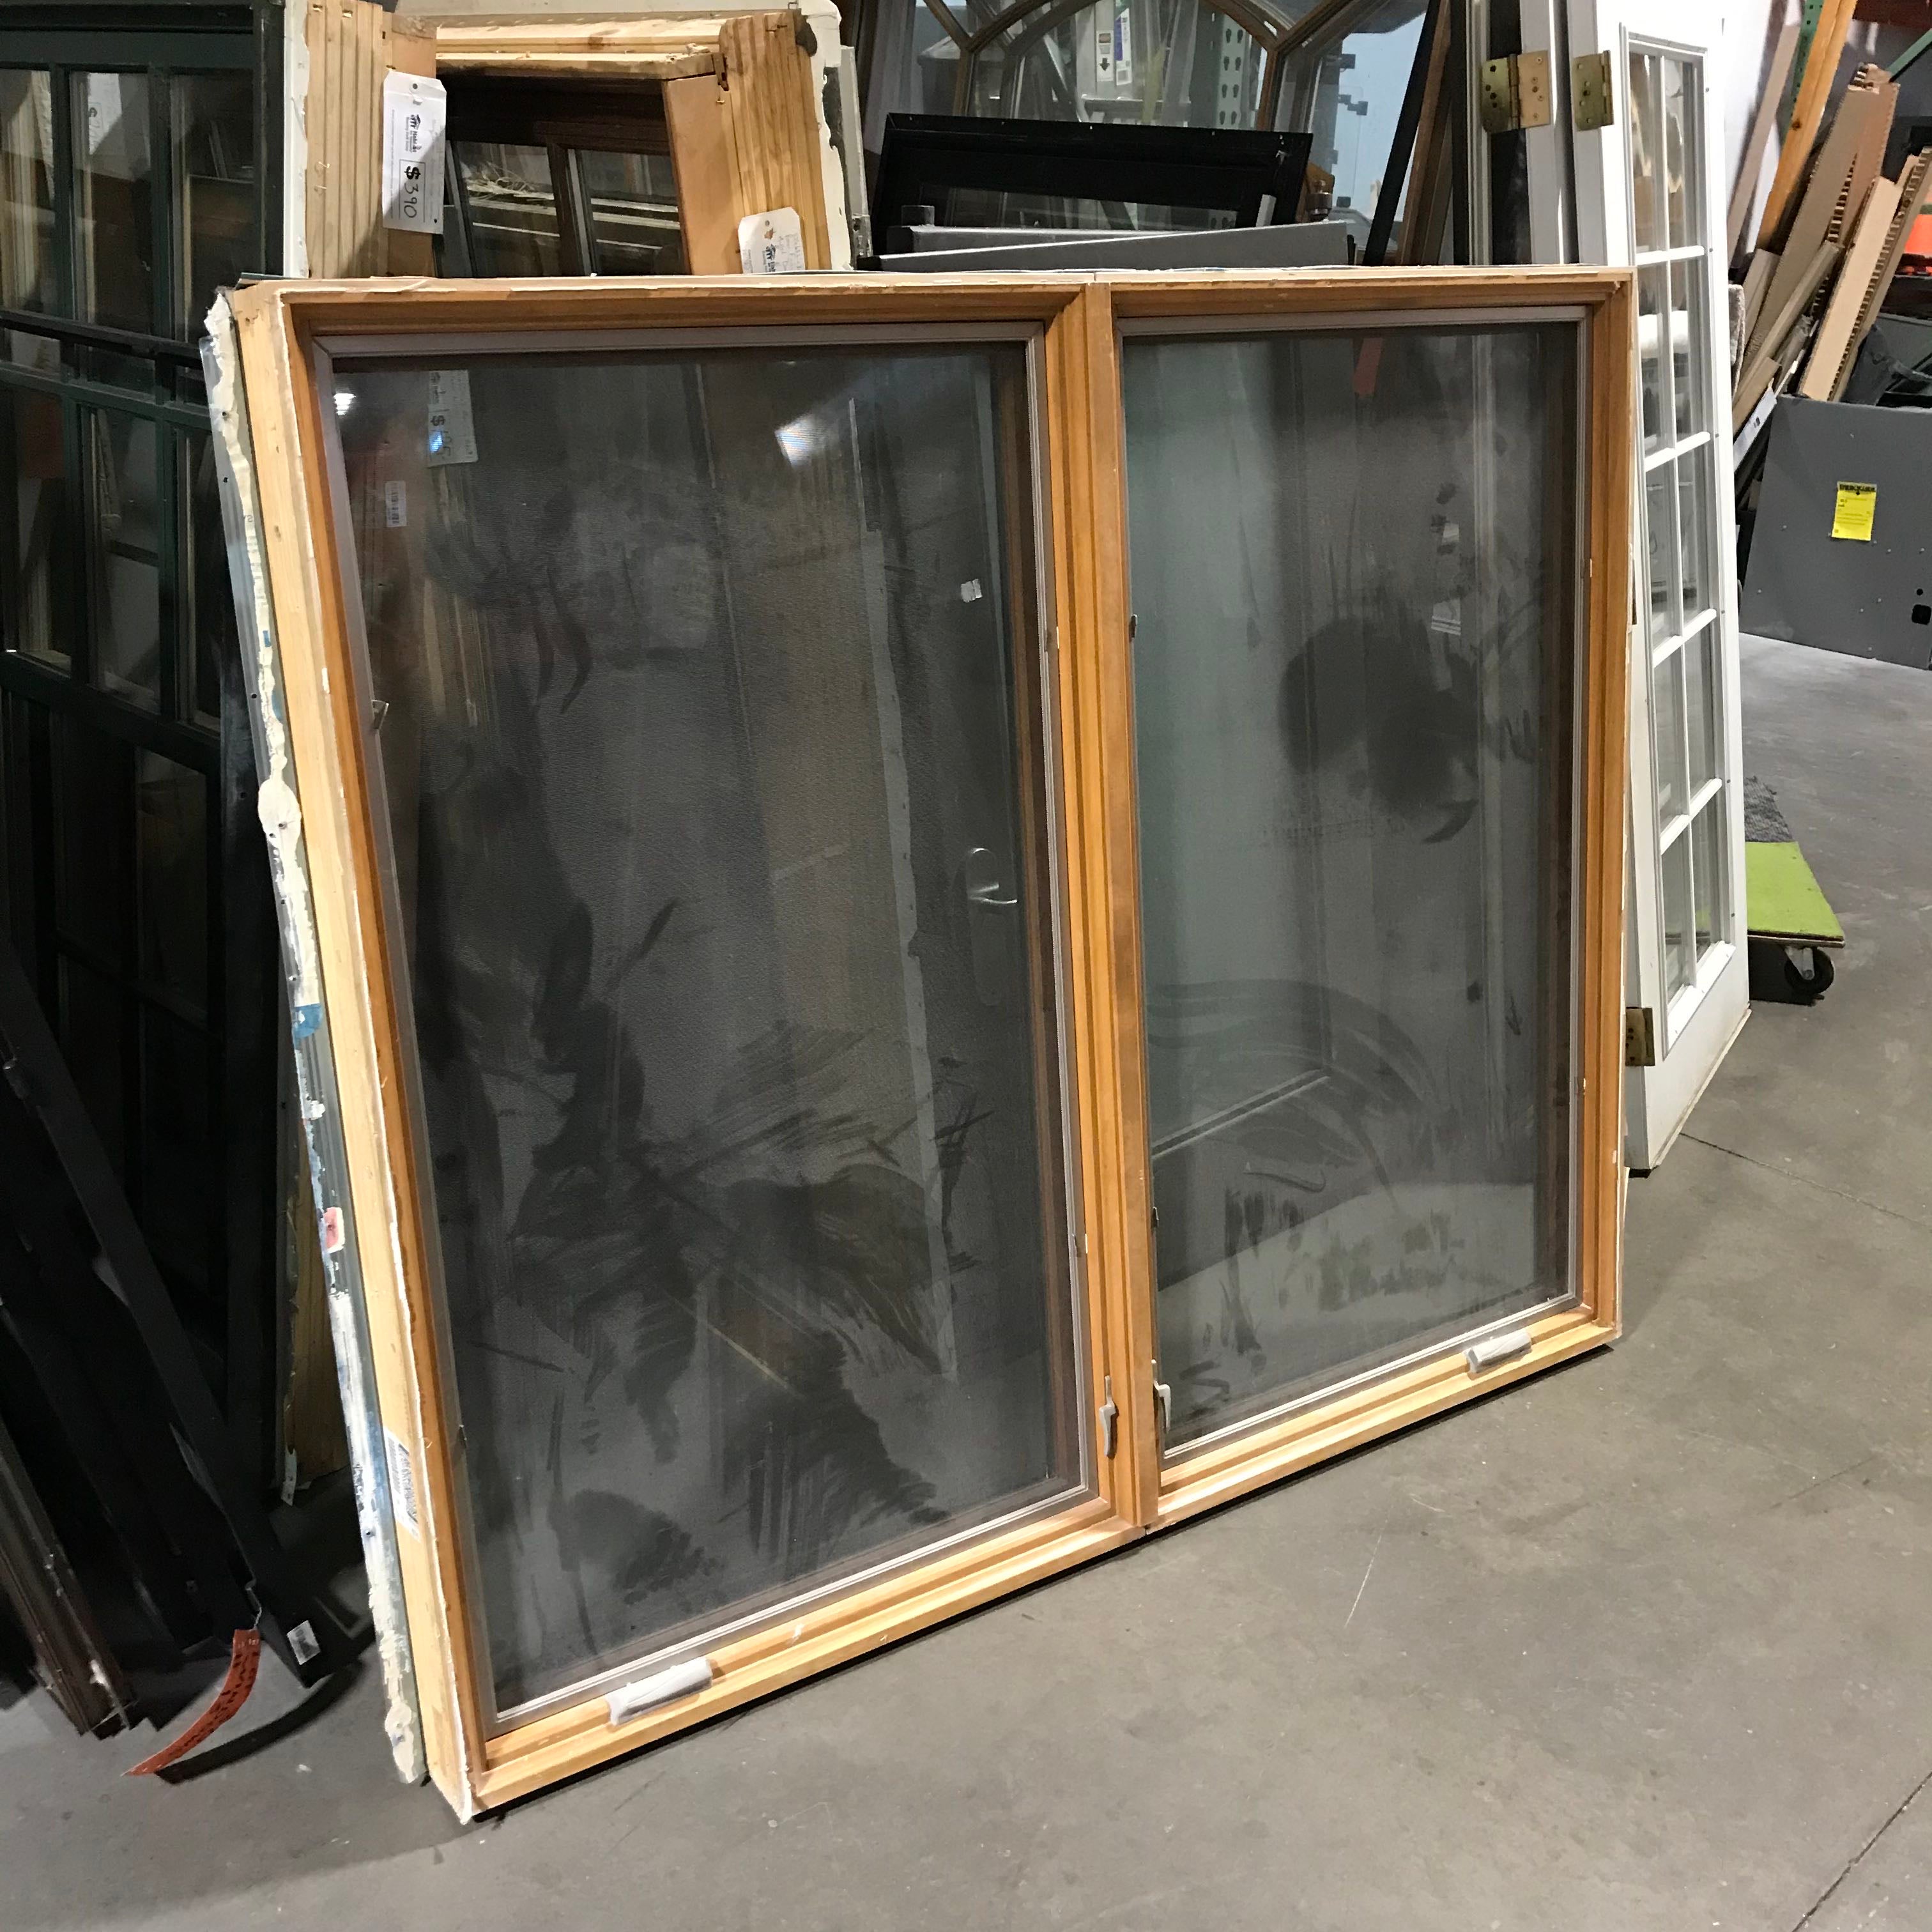 50"x 53"x 5" Tan Metal Clad Double Casement Exterior Window